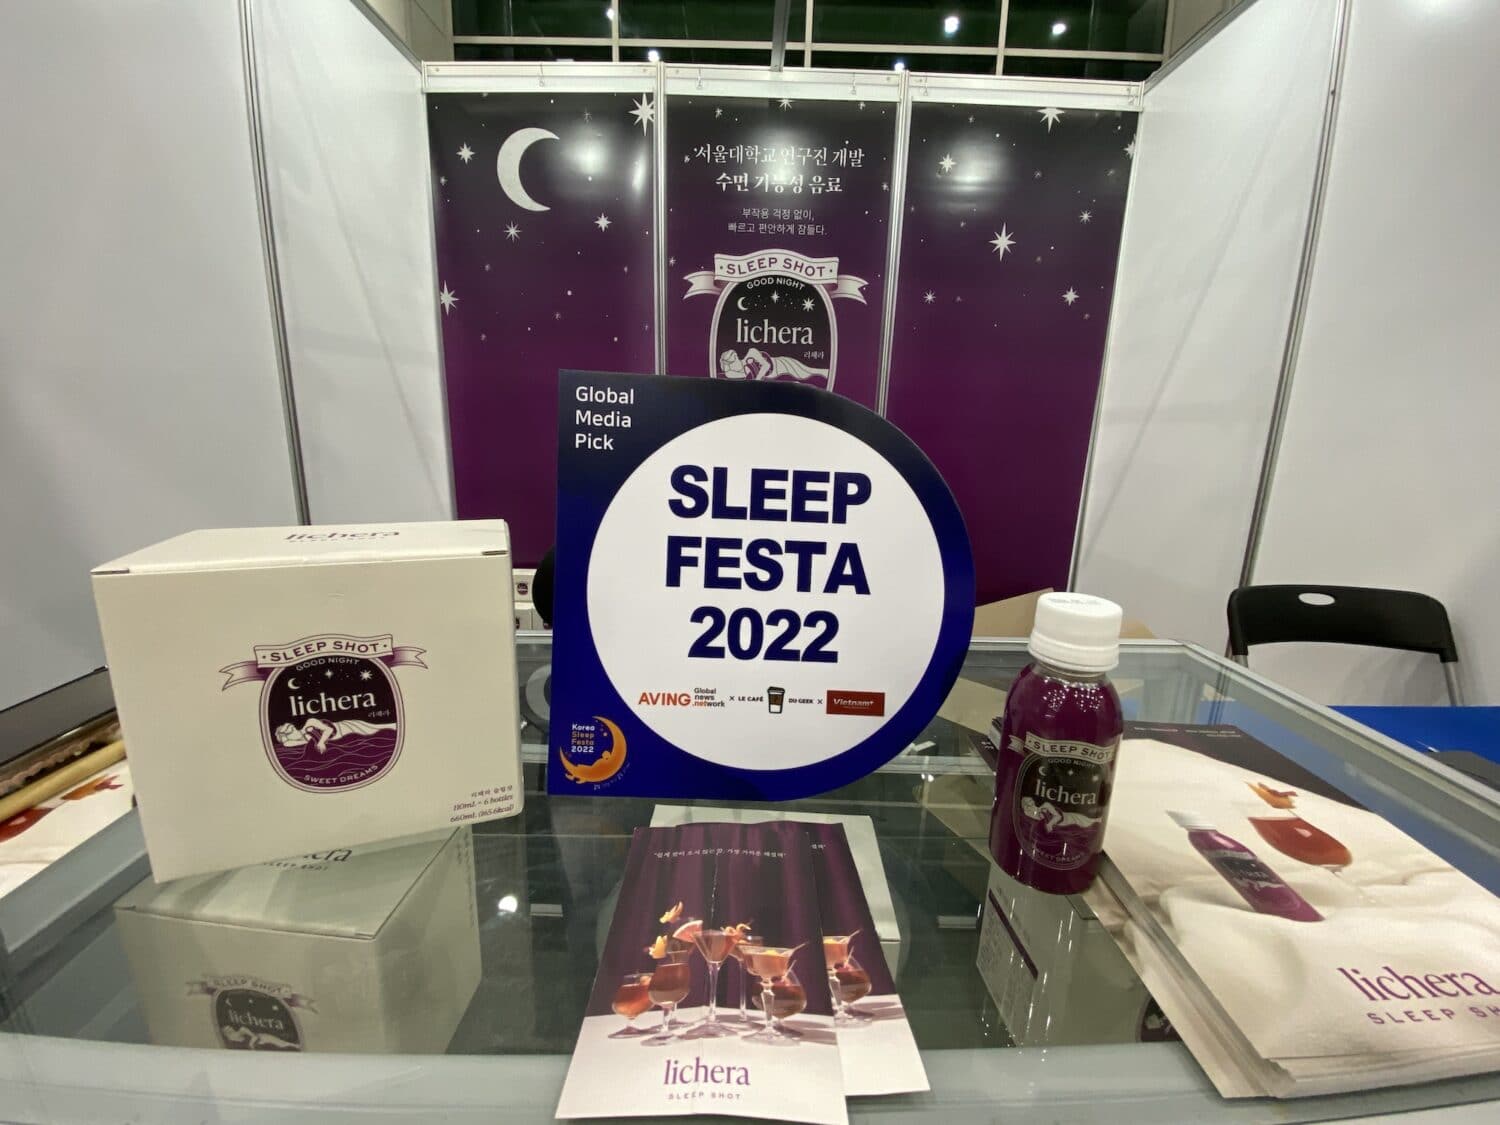 Romansive lichera – Un shot pour bien dormir ! – Startup sleep festa